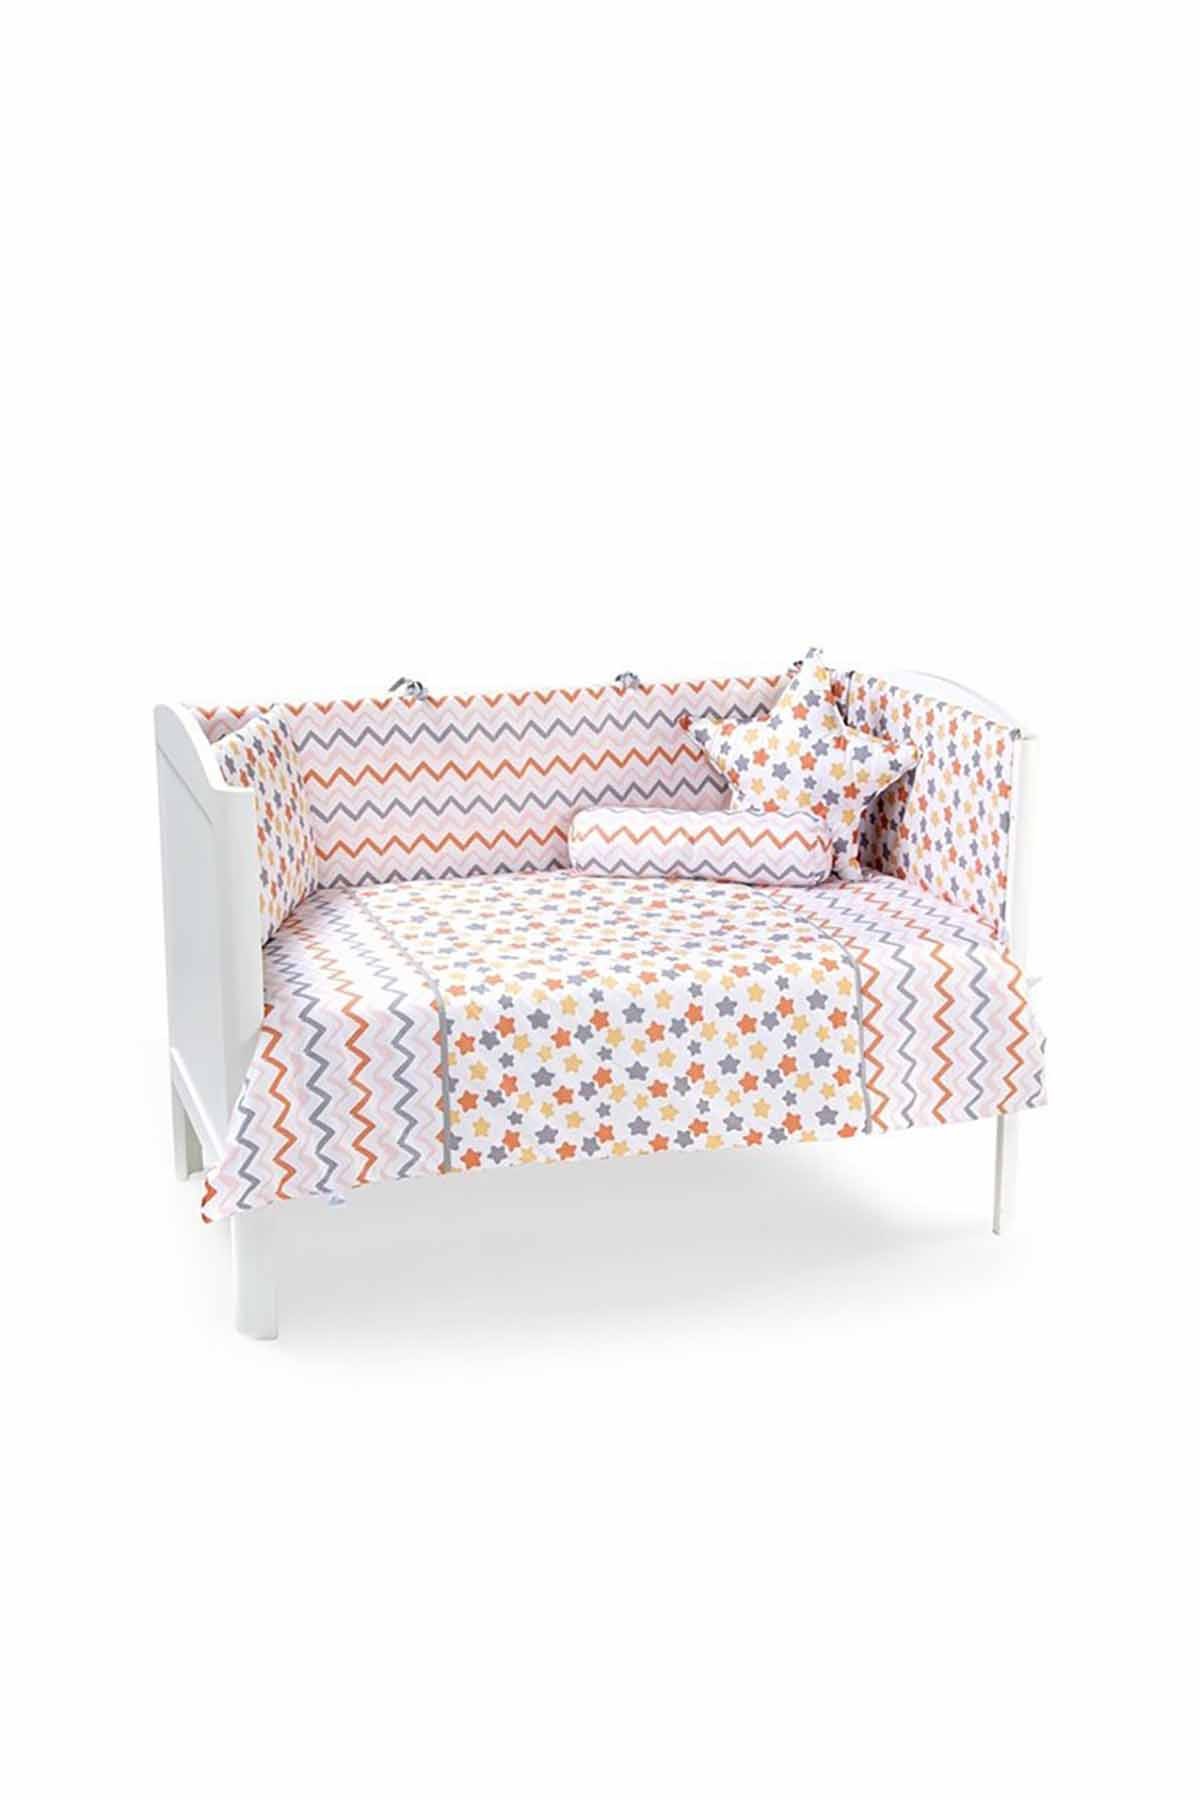 Funna Baby Uyku Seti - Stella / Sarı - 60x120 cm